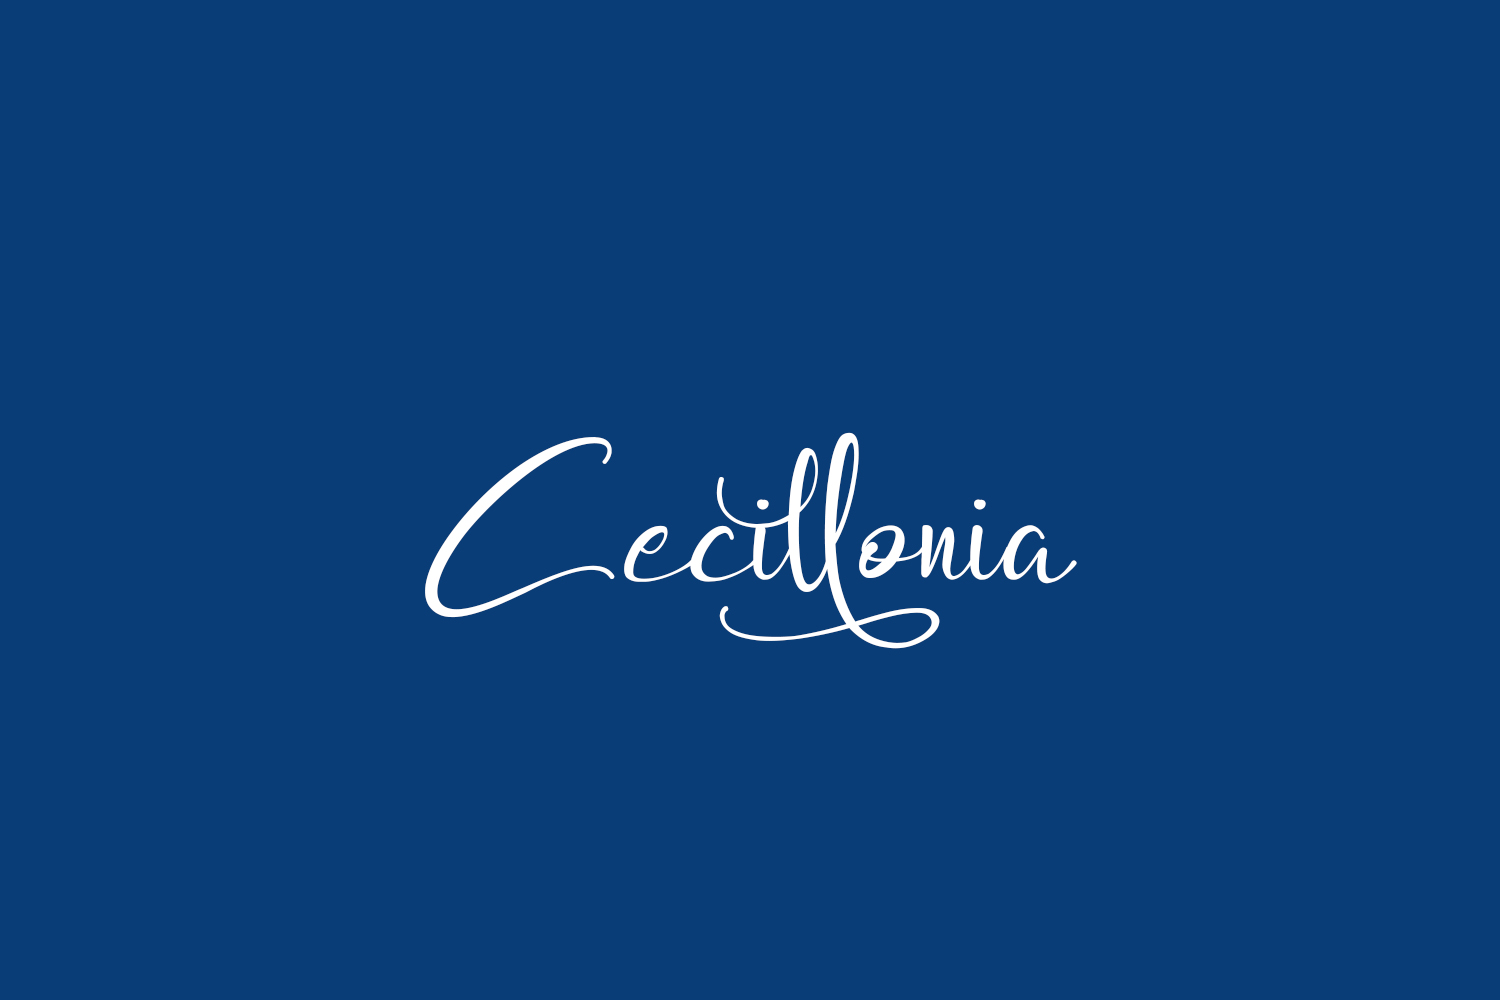 Cecillonia Free Font